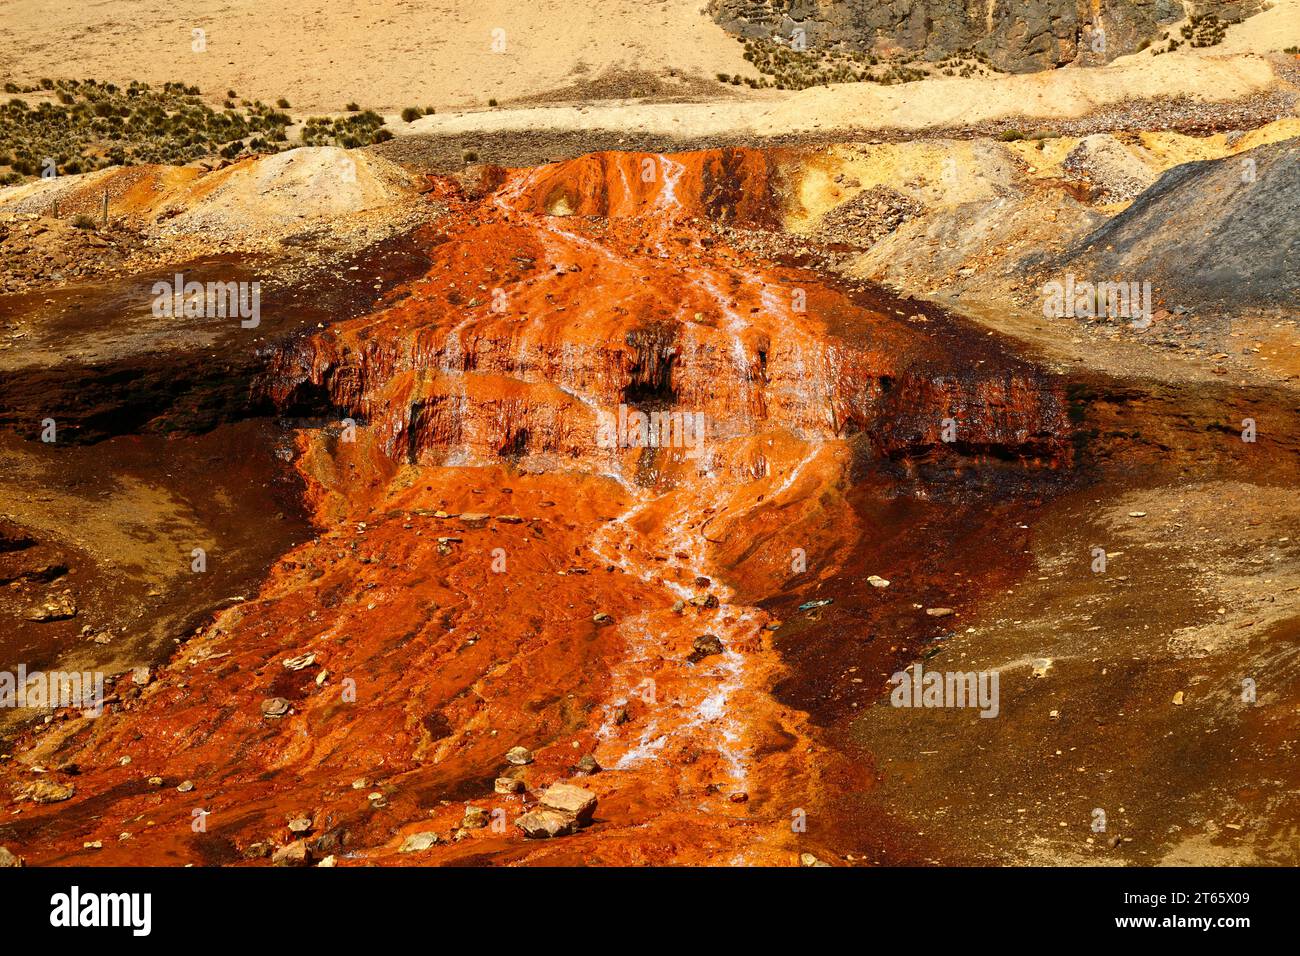 Détail d'un ruisseau descendant une colline contaminé par un drainage minier acide et des déchets industriels provenant d'une mine près de Milluni, près de la Paz, Bolivie. Ce ruisseau se jette dans le réservoir Represa Milluni, qui alimente en eau El Alto et certaines parties de la Paz. Banque D'Images